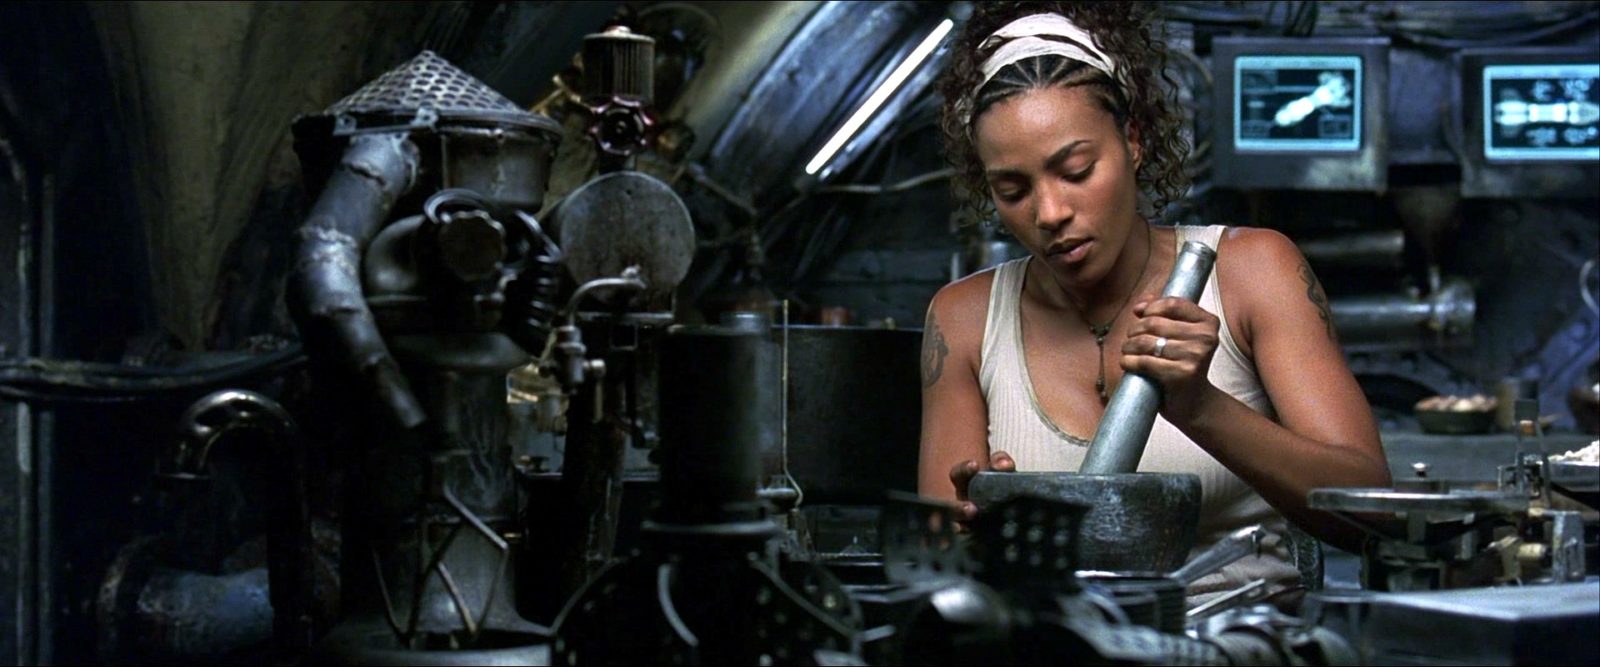 Zdjęcie czarnoskórej kobiety z hutą na splatającą włosy siedzi przy maszynie i konstruuje.